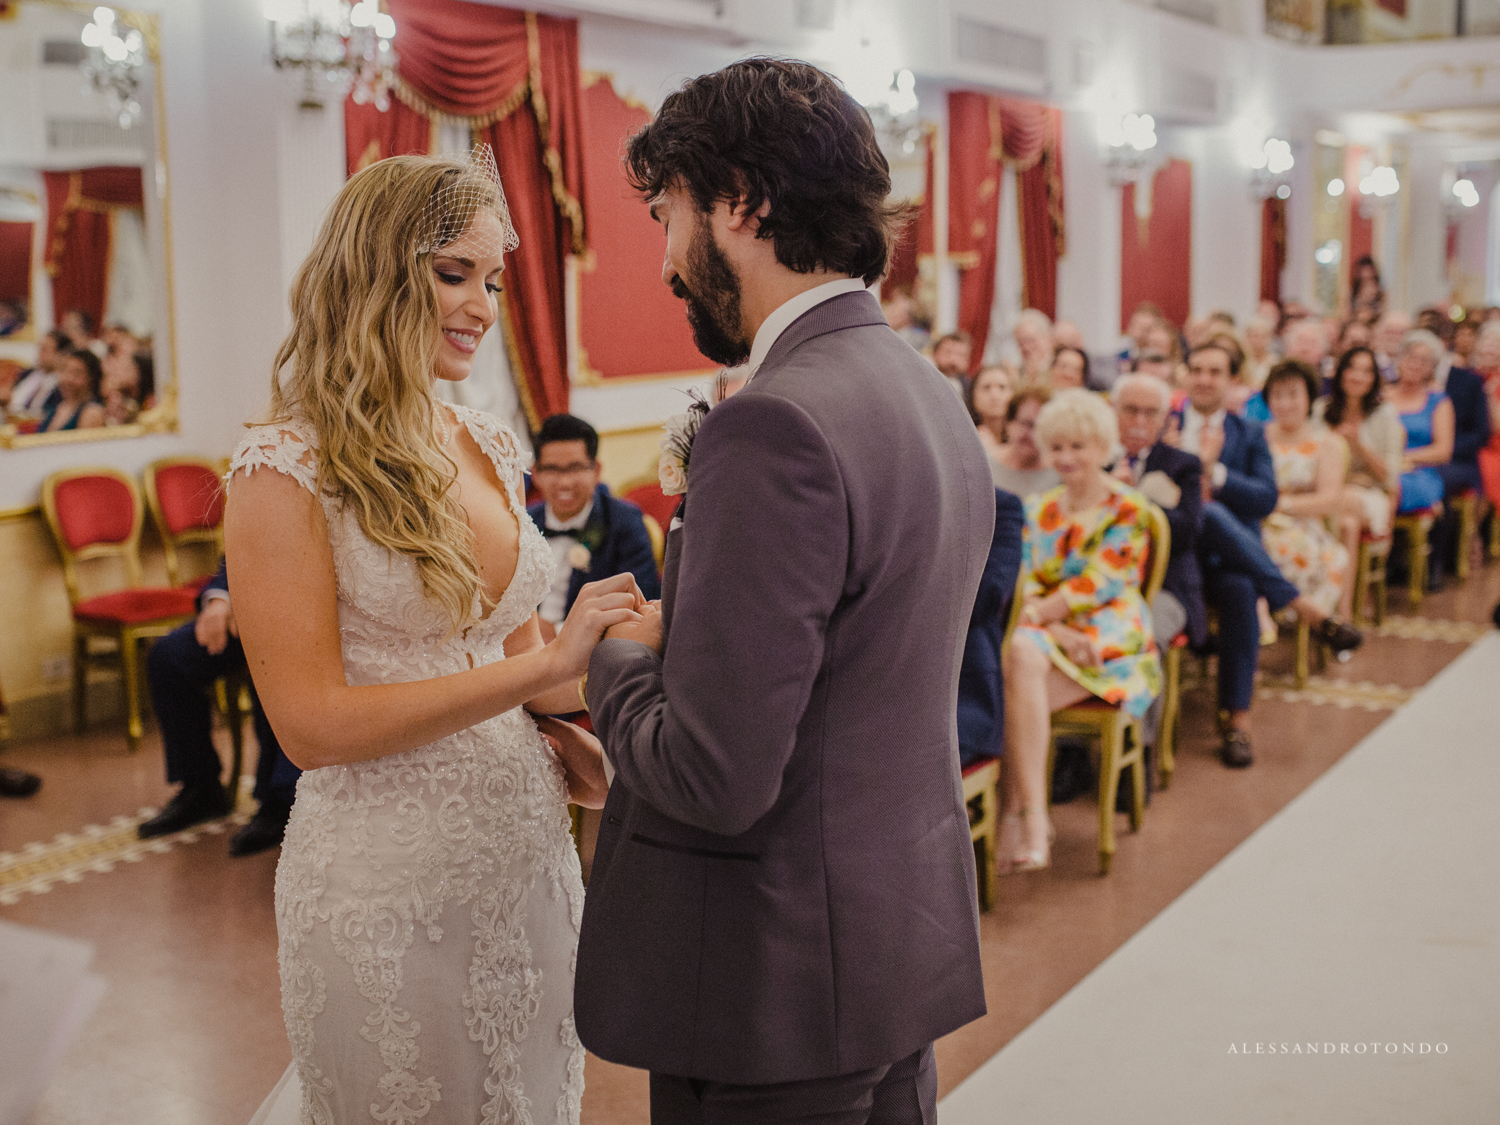 Fotografo di matrimoni reportage sicilia Agrigento porto Empedocle Alesssandro Tondo 2G3A8296